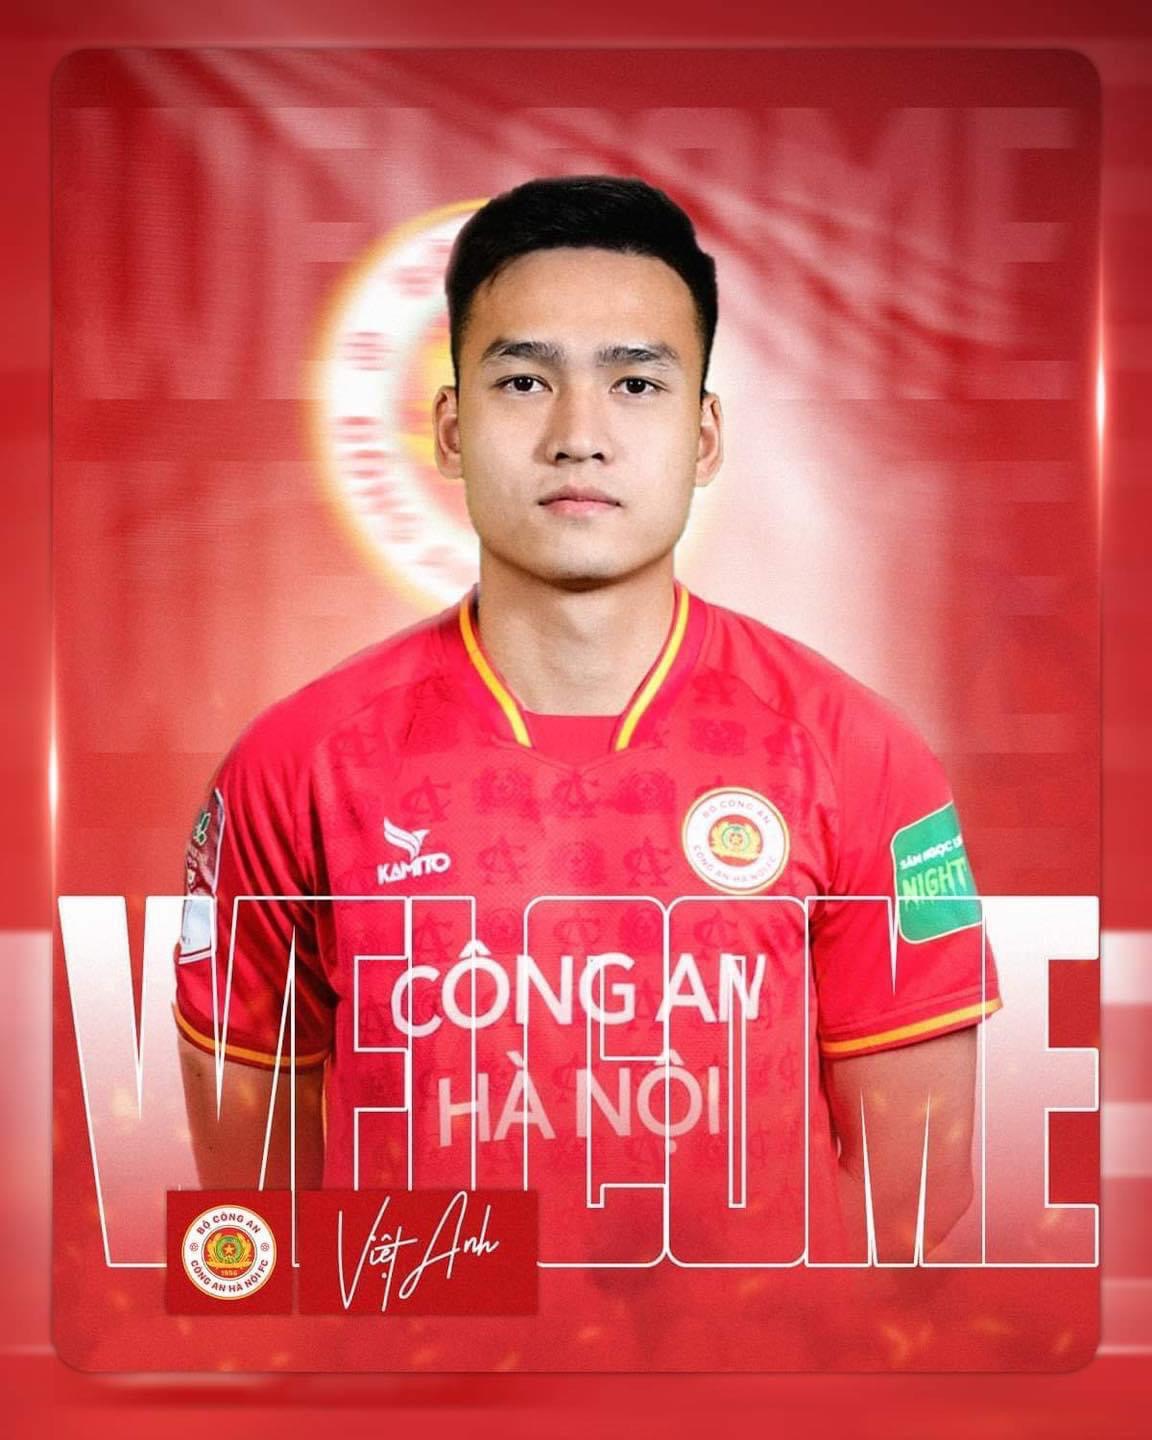 Bùi Hoàng Việt Anh chính thức gia nhập CLB Công an Hà Nội.